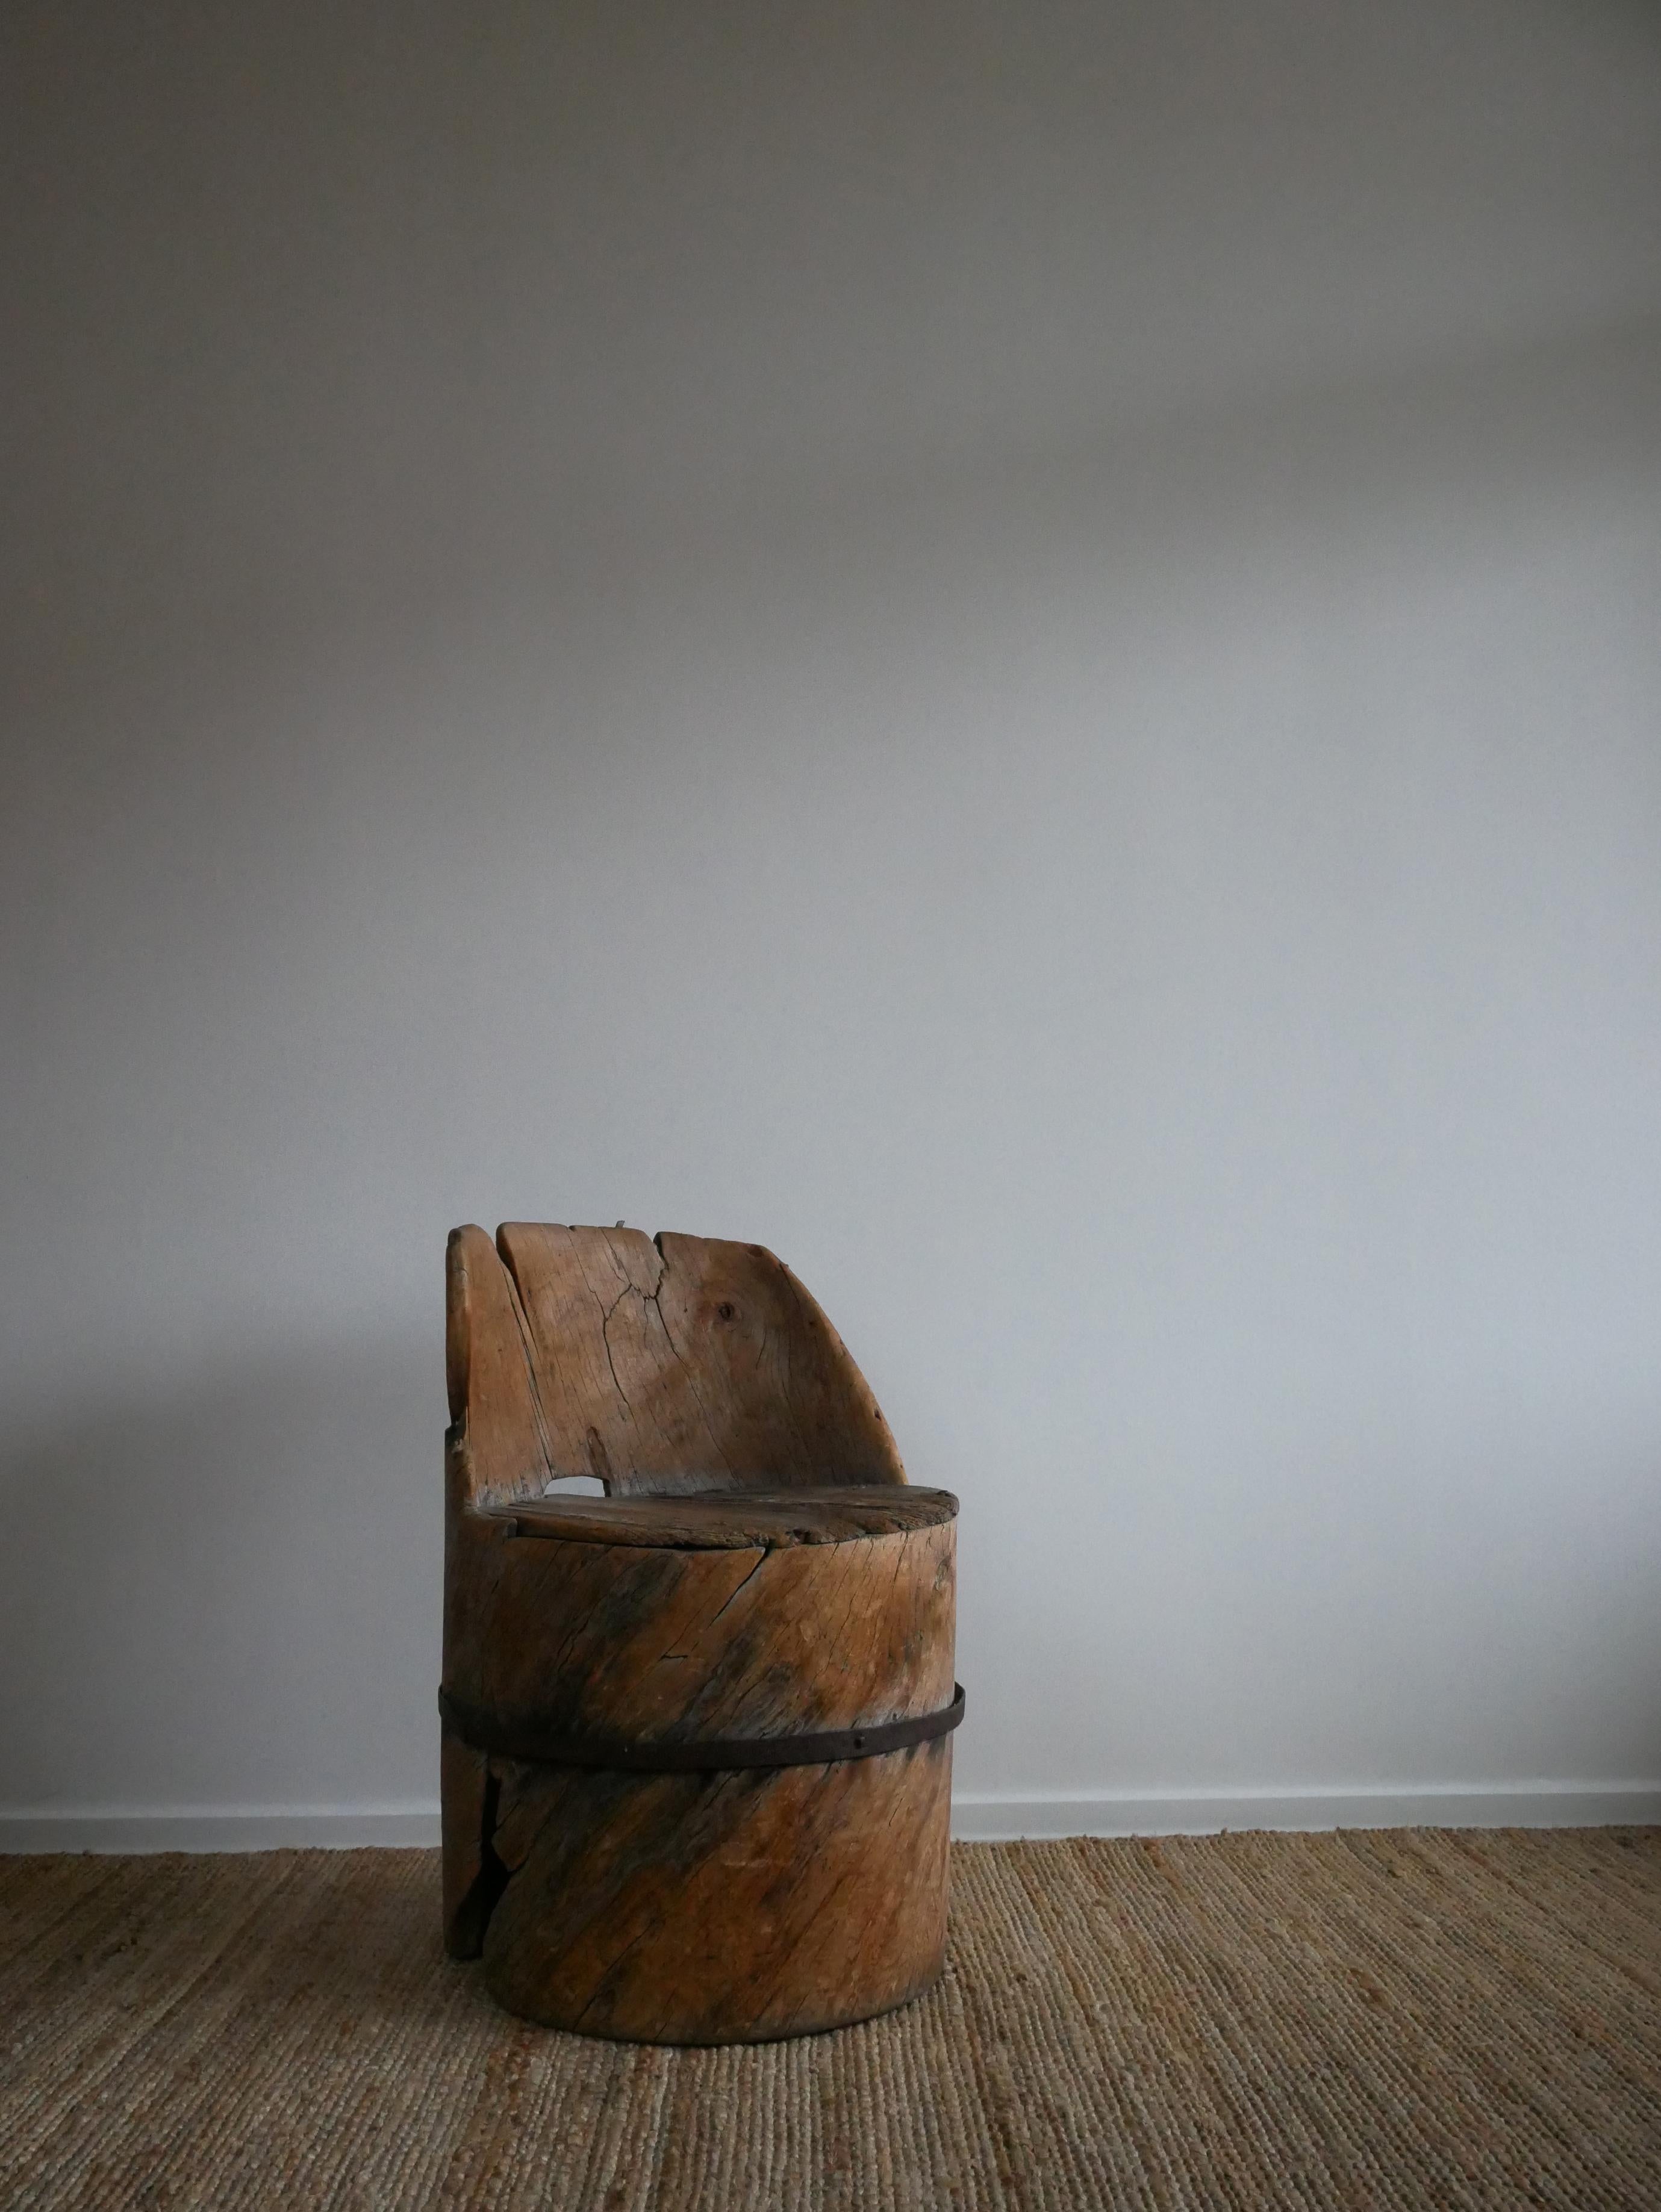 Schwedischer Baumstumpf-Stuhl
Hergestellt aus einem einzigen Kiefernstamm, hergestellt zwischen 1680 und 1730.
Metallband und Nägel wurden im späten 1800 Jahrhundert hinzugefügt.
      